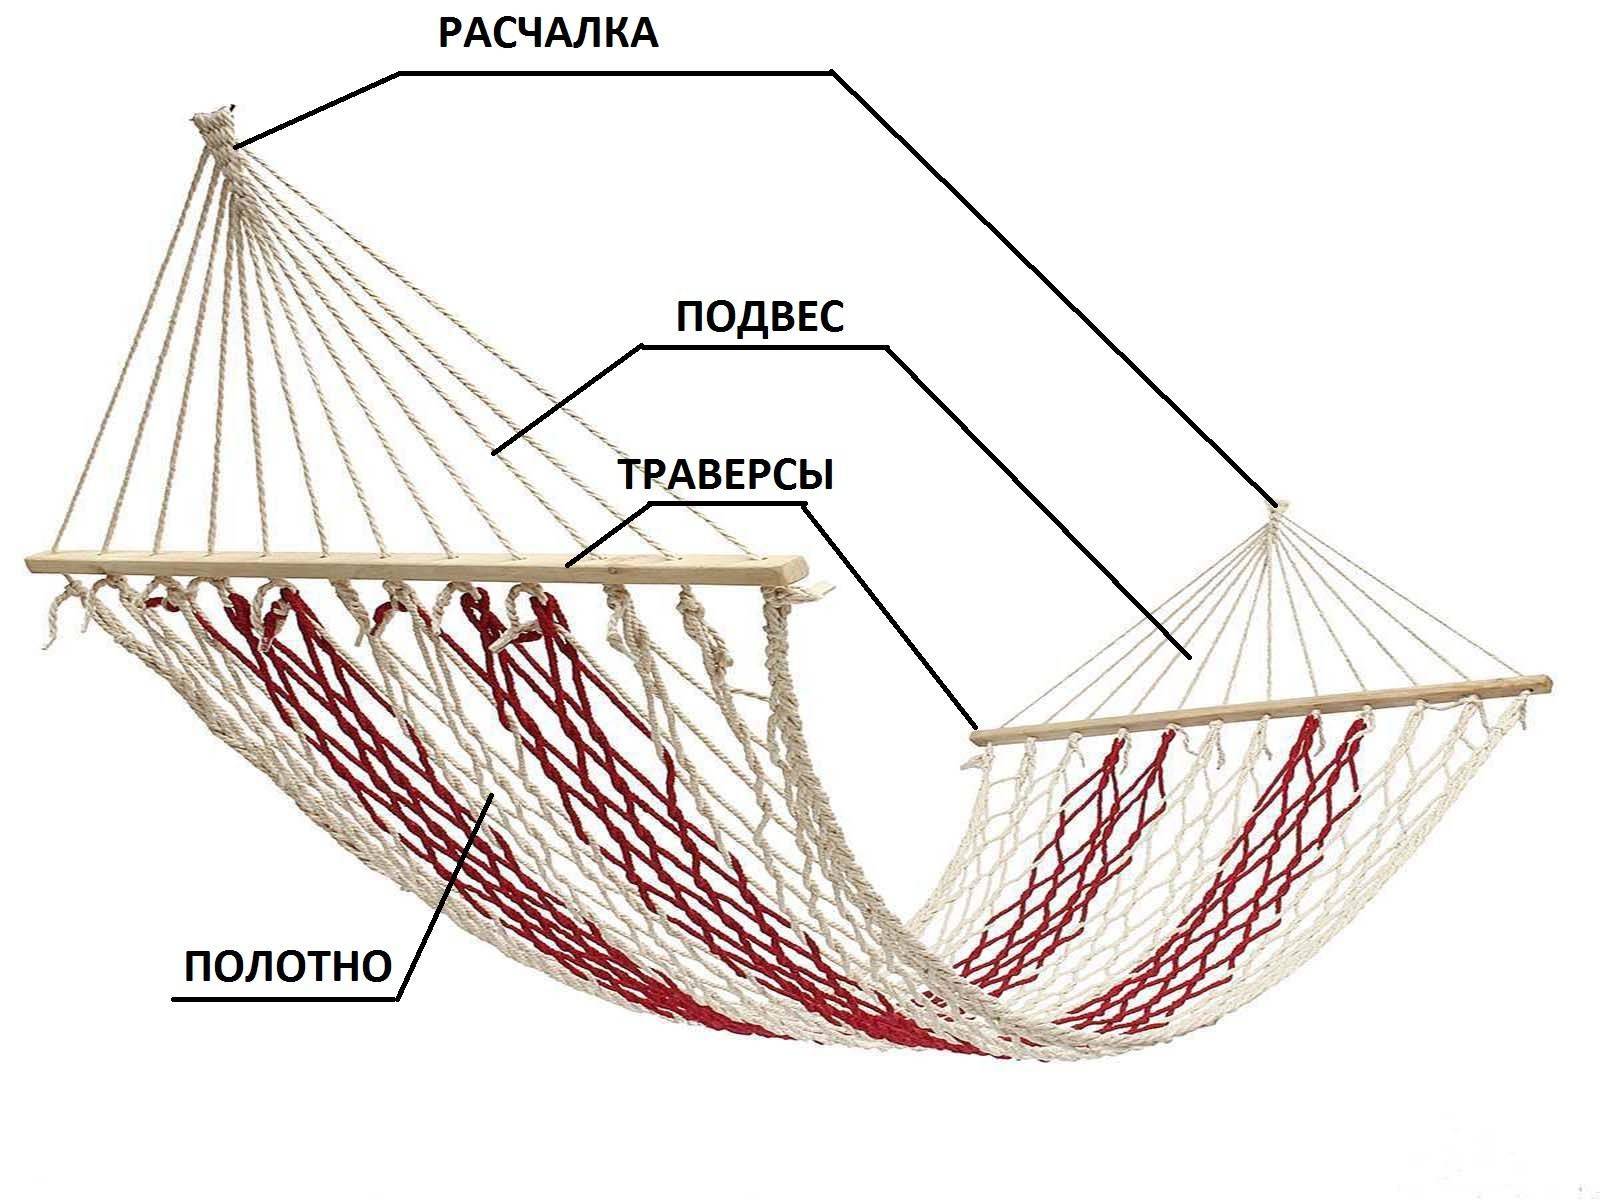 Плетение гамака своими руками: схема для начинающих пошагово с видео | онлайн-журнал о ремонте и дизайне